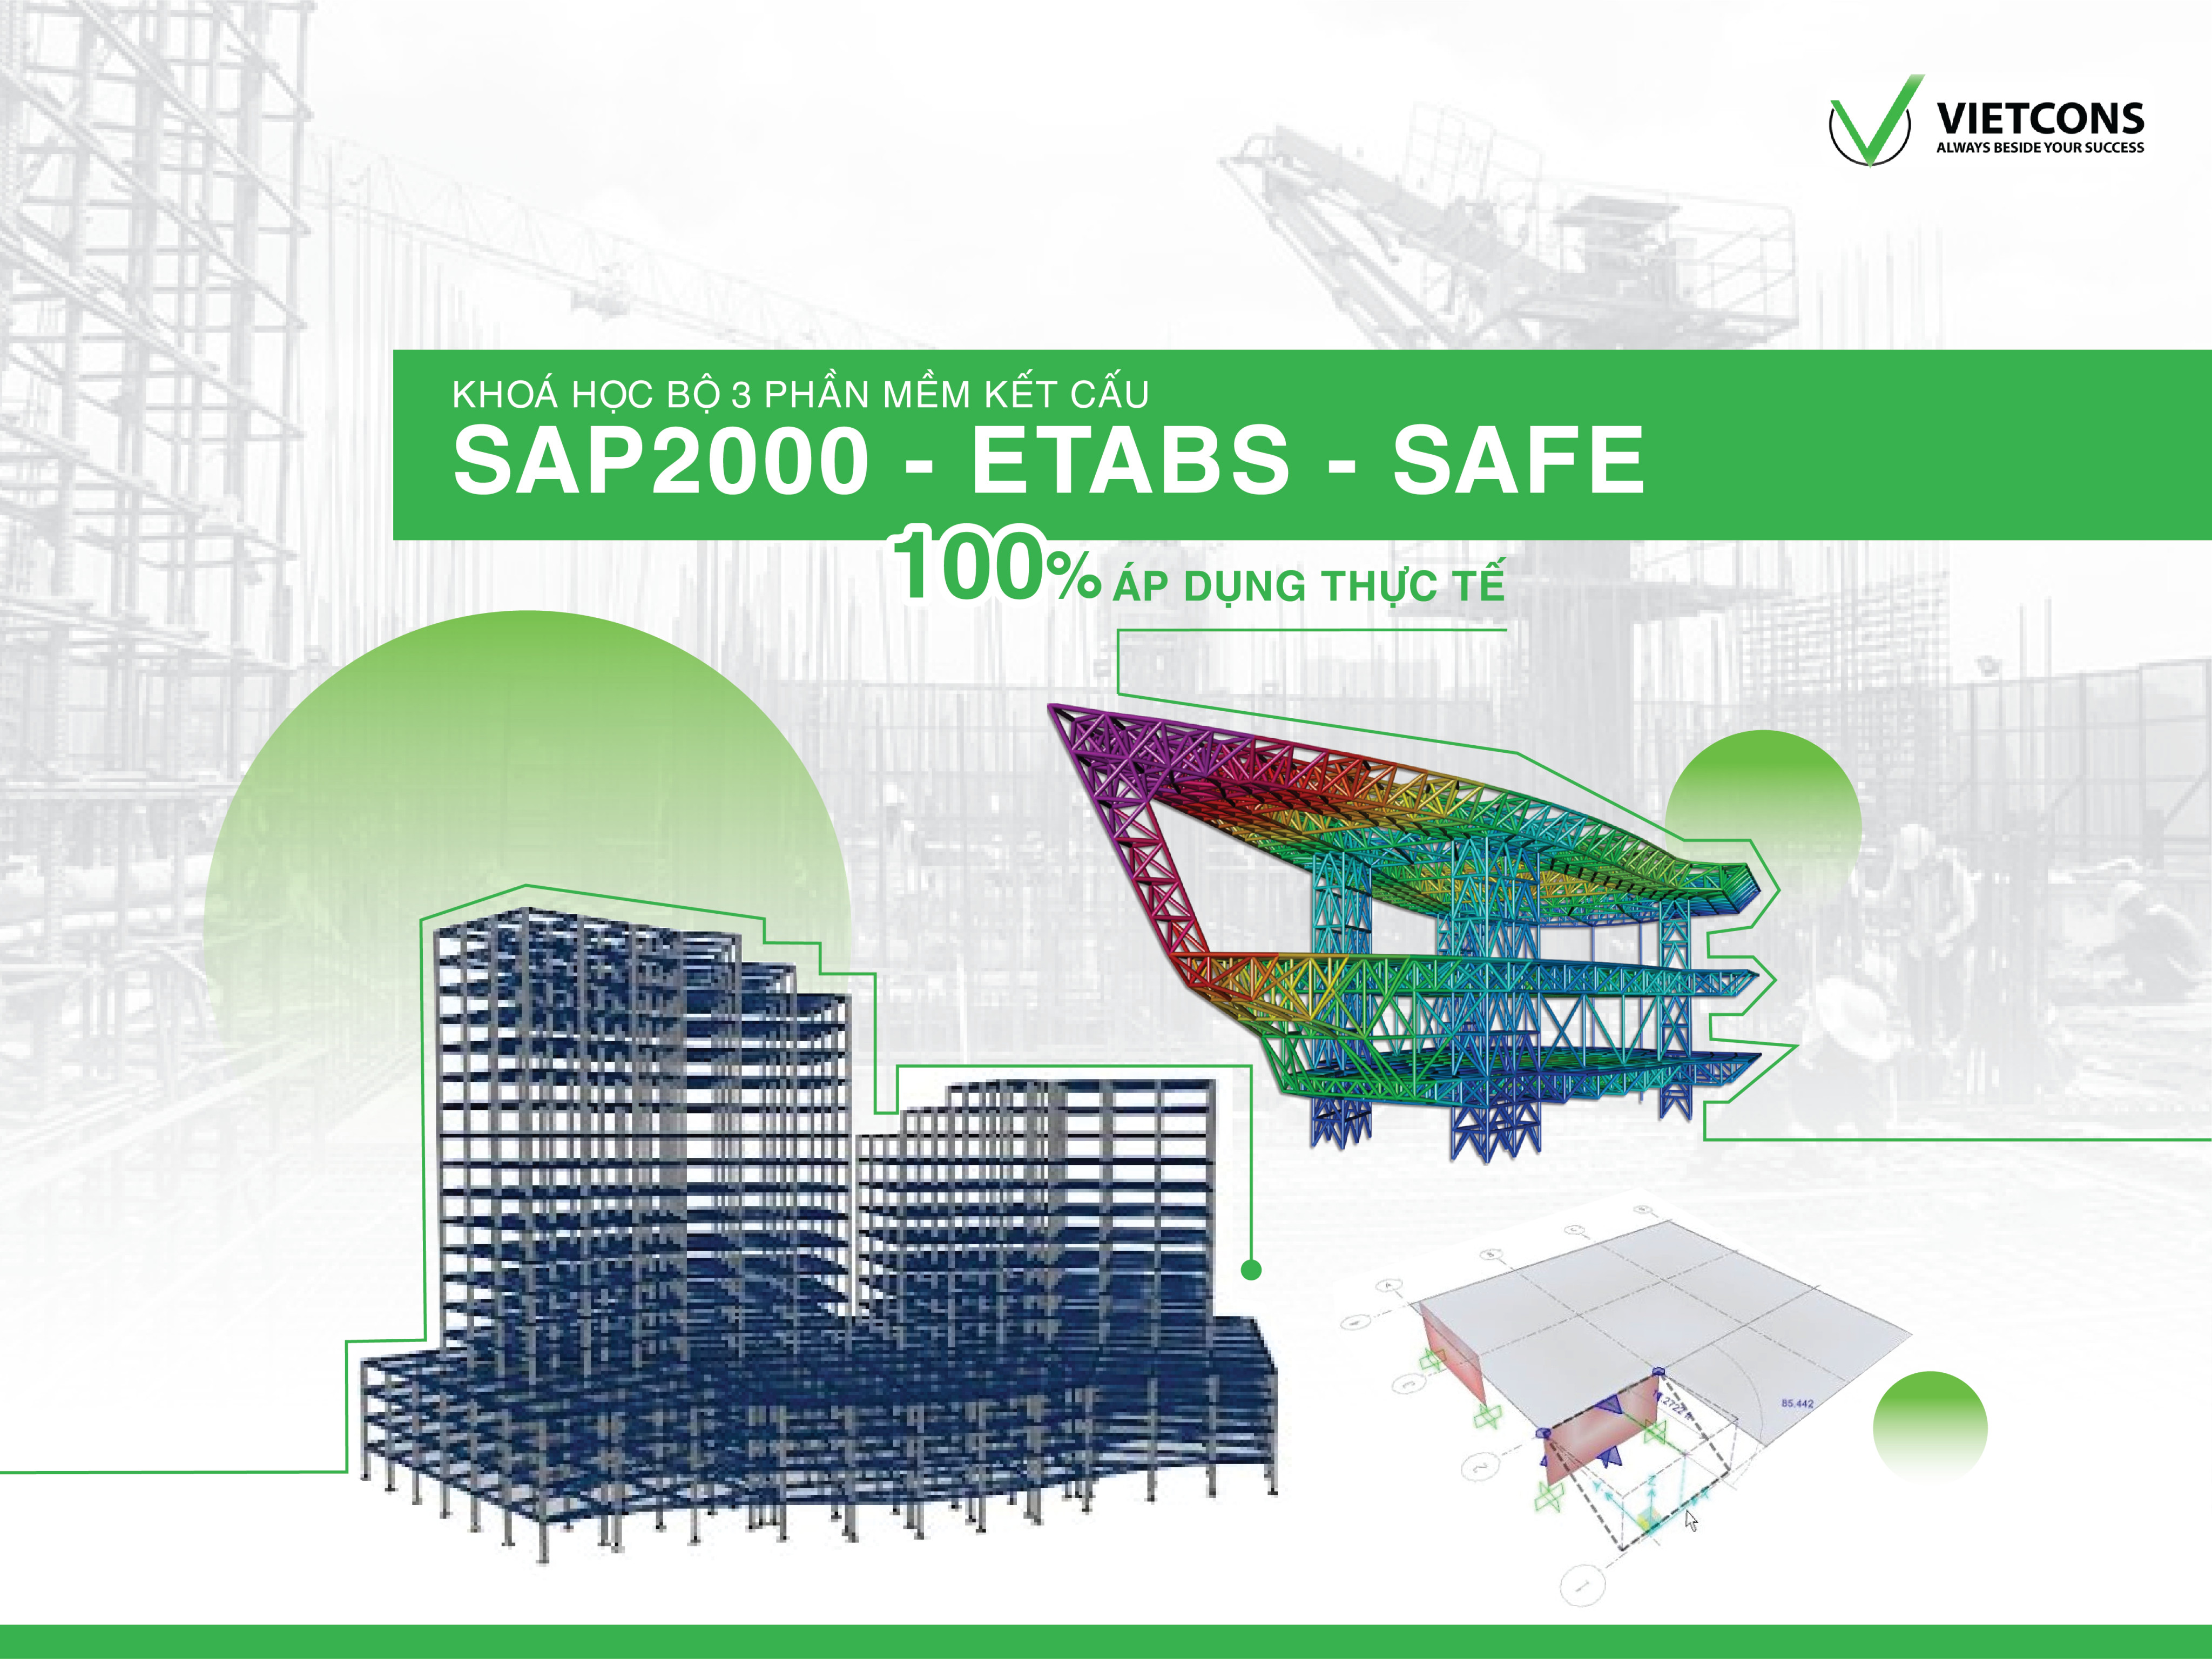 Etabs - Safe - Sap căn bản & nâng cao